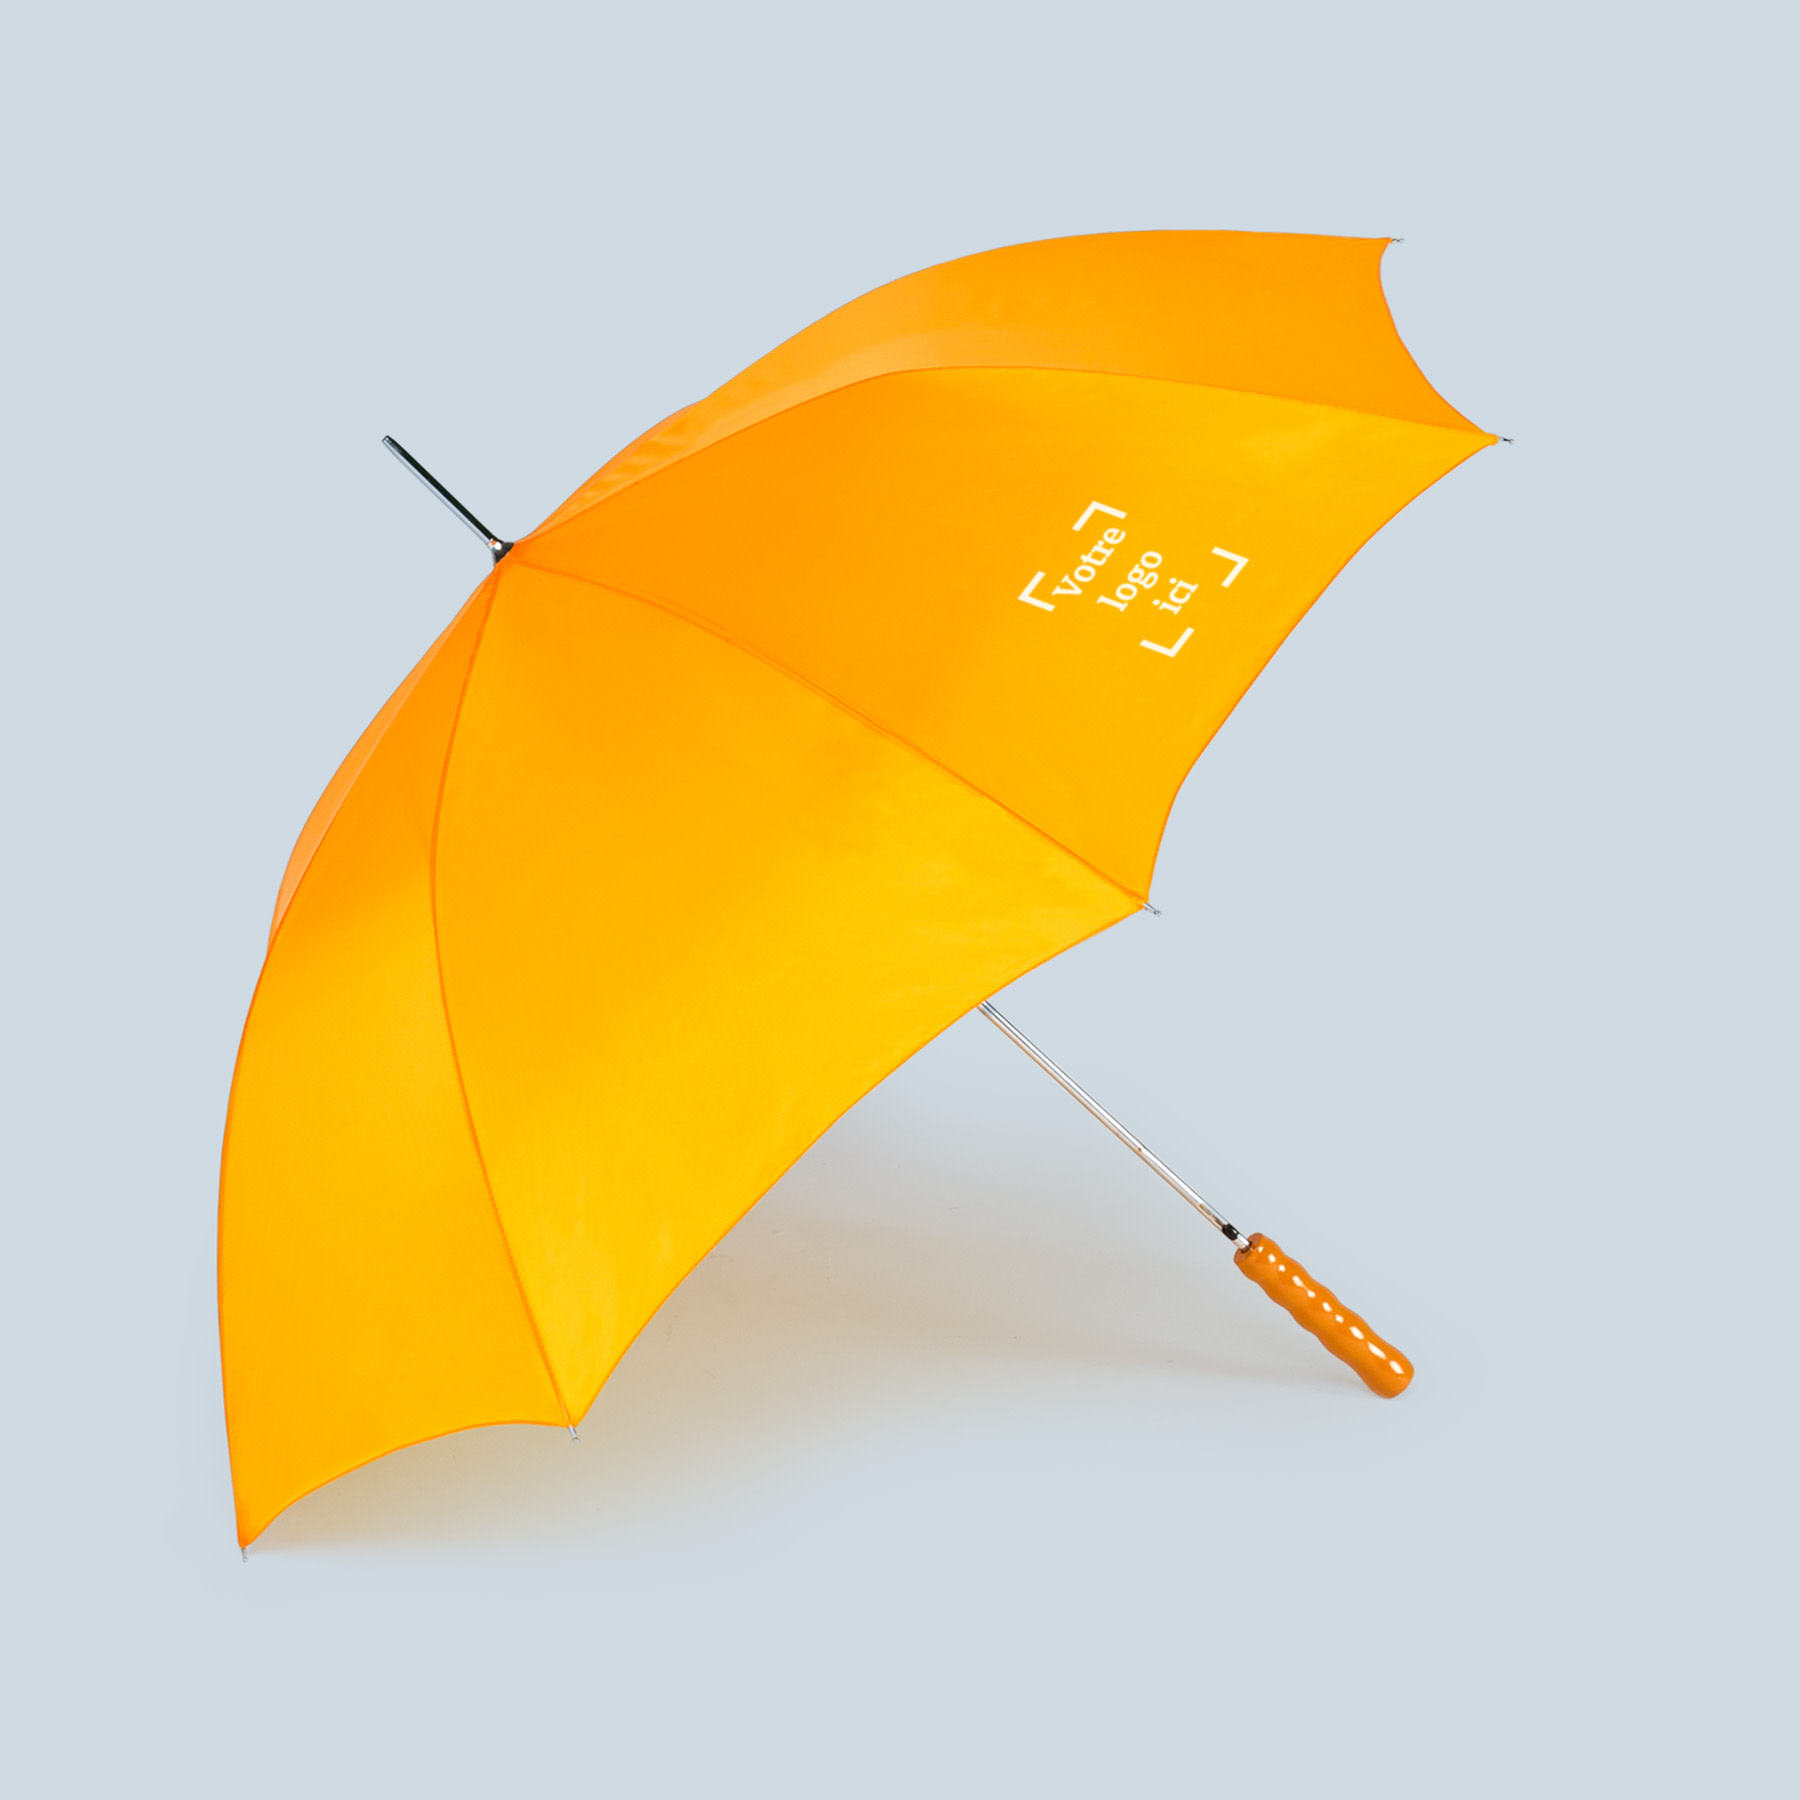 productbeelden je-merk-binnen-handbereik paraplu FR